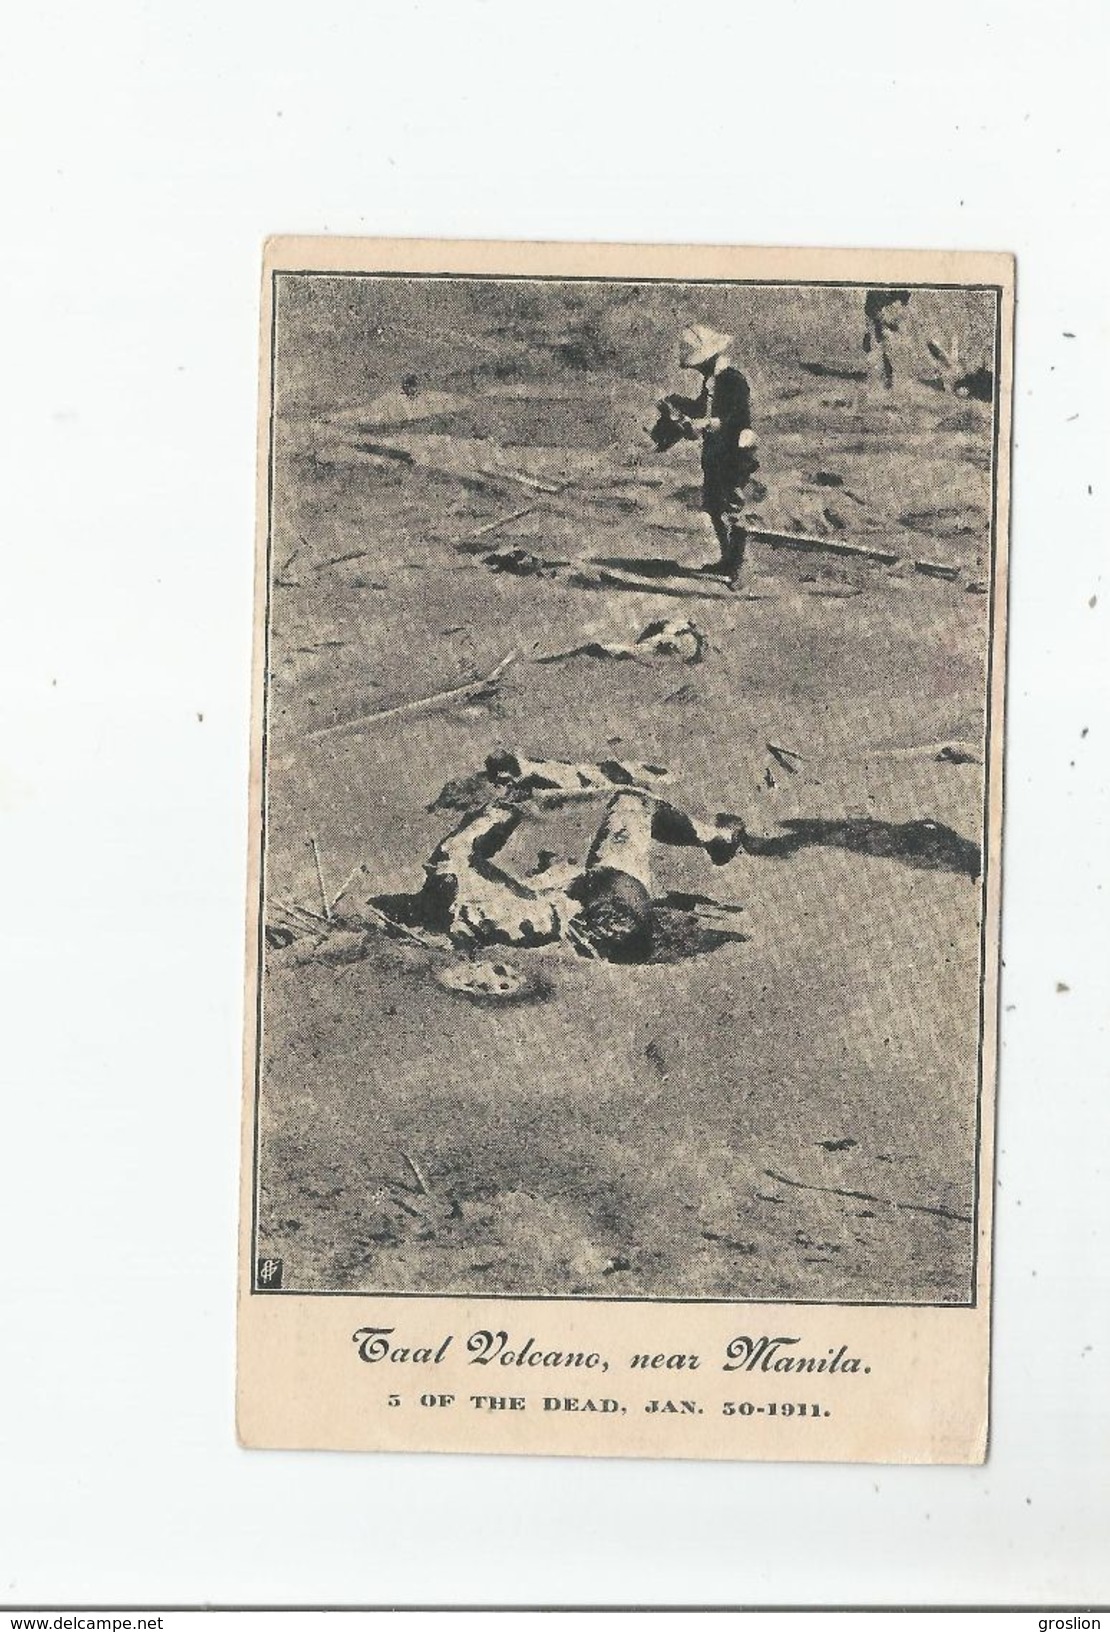 TAAL VOLCANO NEAR MANILA 3 OF THE DEAD JAN 30.1911 - Philippinen